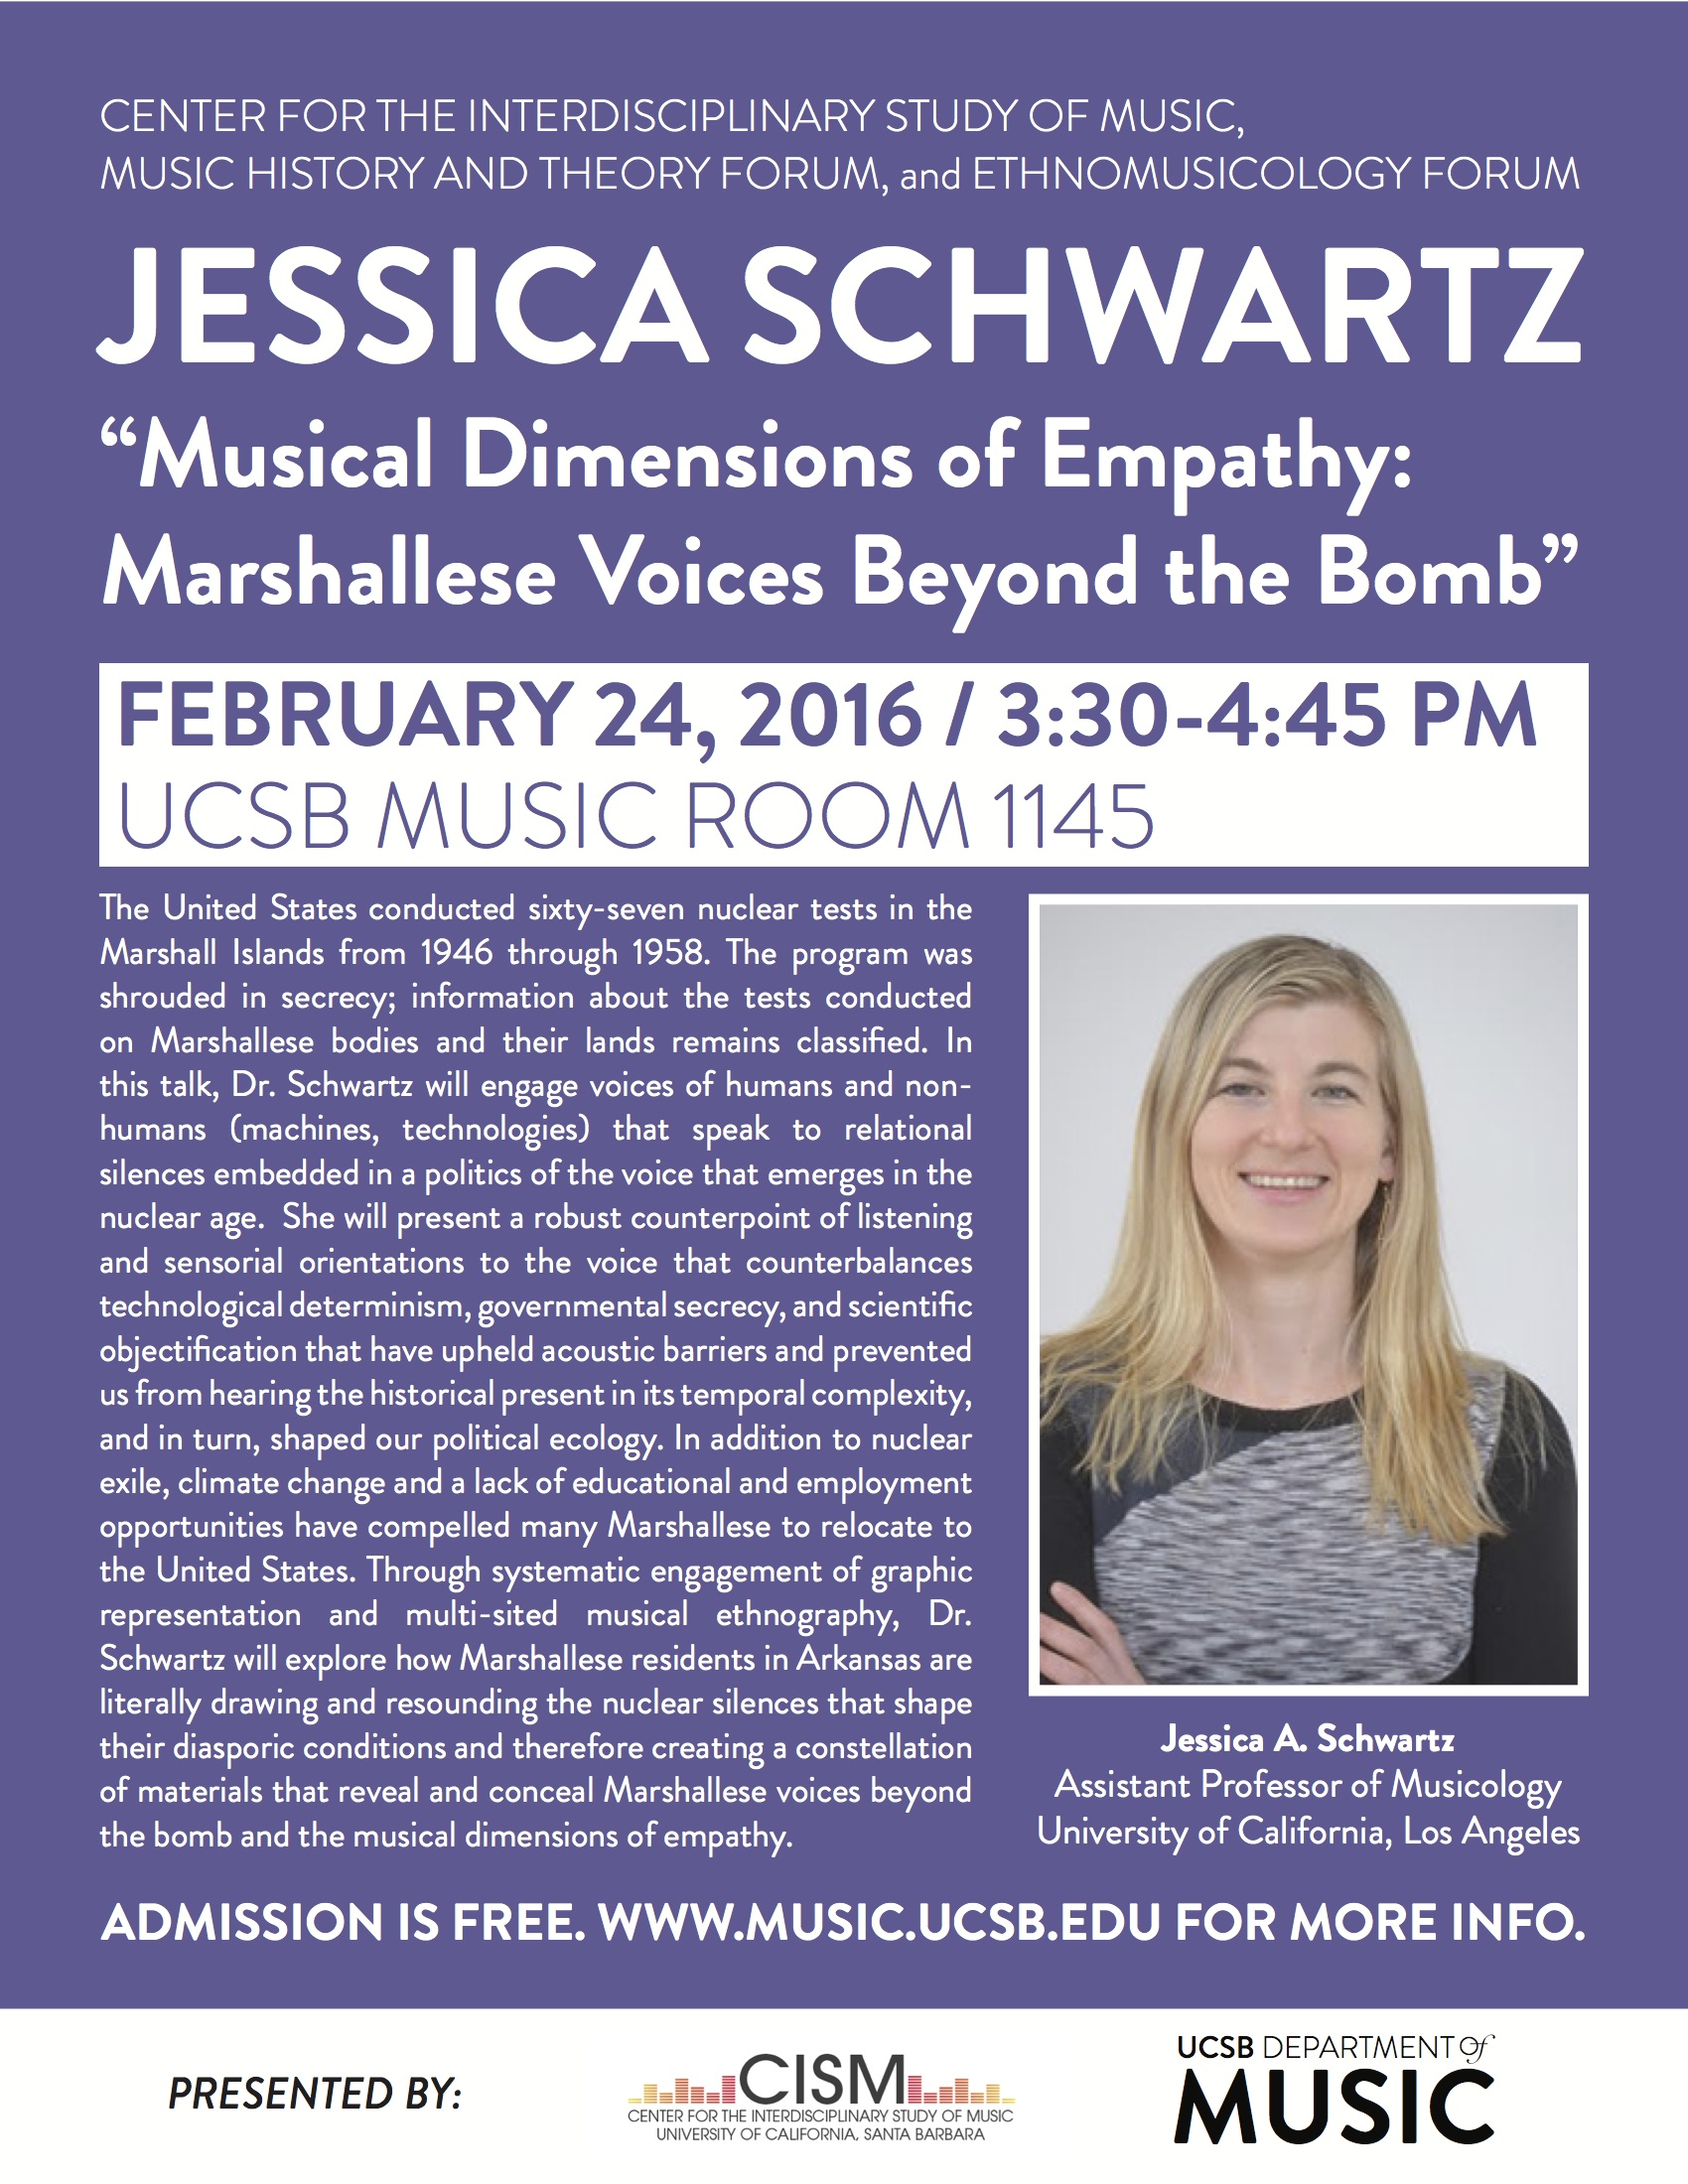 poster of jessica schwartz's talk